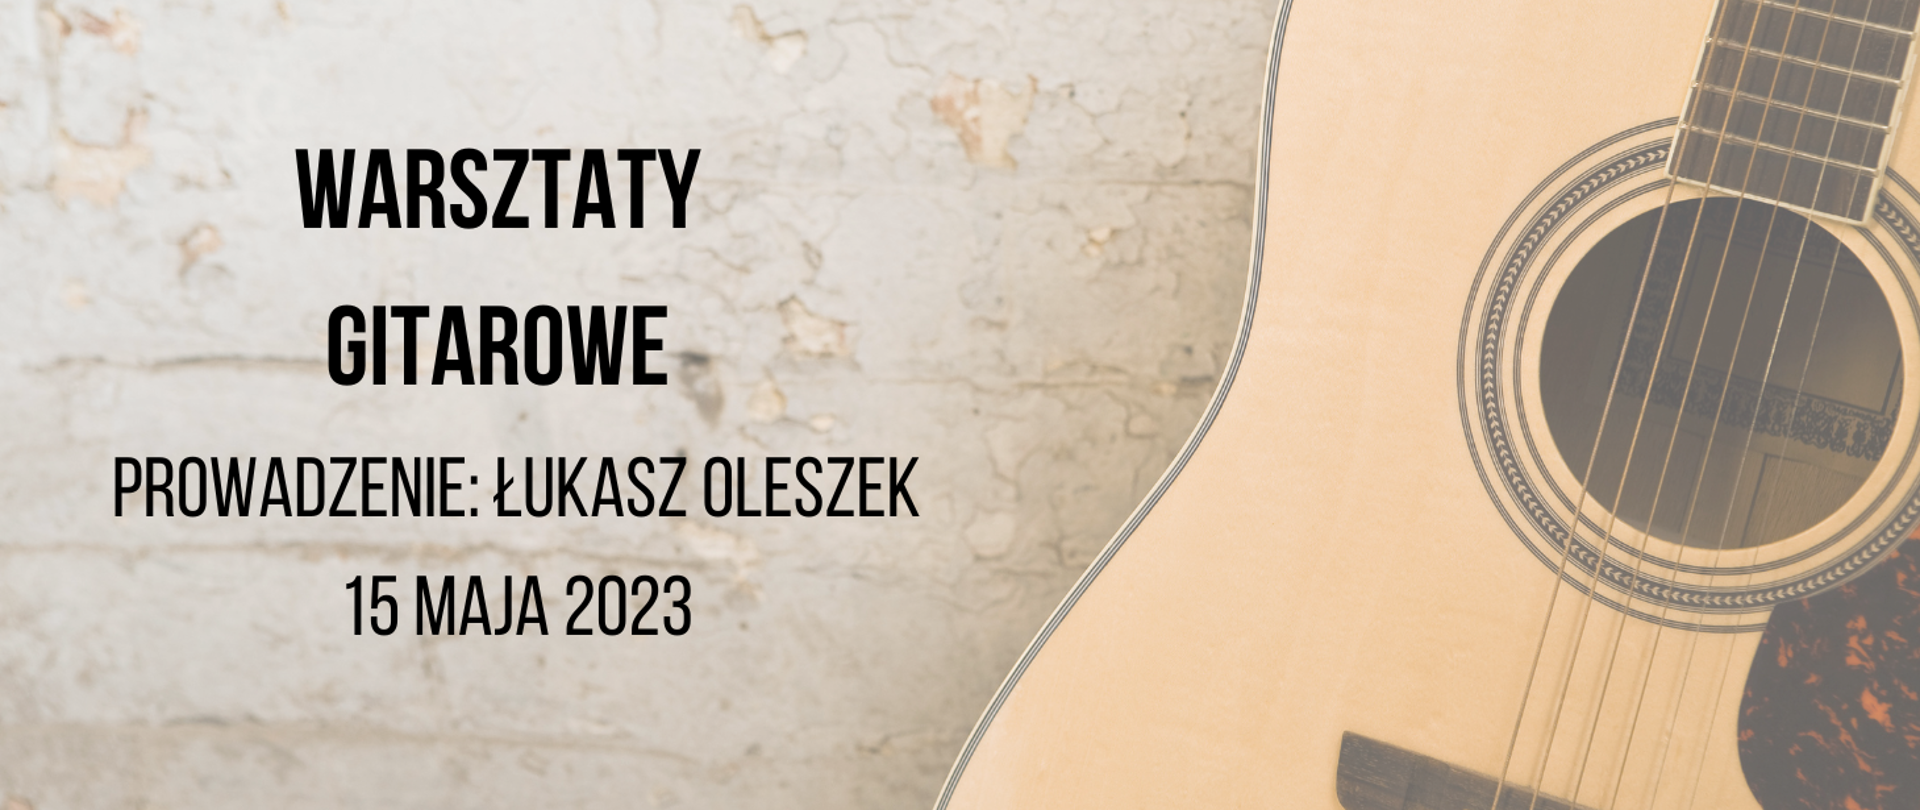 Plakat informujący o warsztatach dla gitarzystów w dniu 15 maja 2023, warsztaty poprowadz pan Łukasz Oleszek. Z prawej strony cześć pudła rezonansowego gitary i otworem rezonansowym i strunami. Z lewej strony tekst w kolorze czarnym.